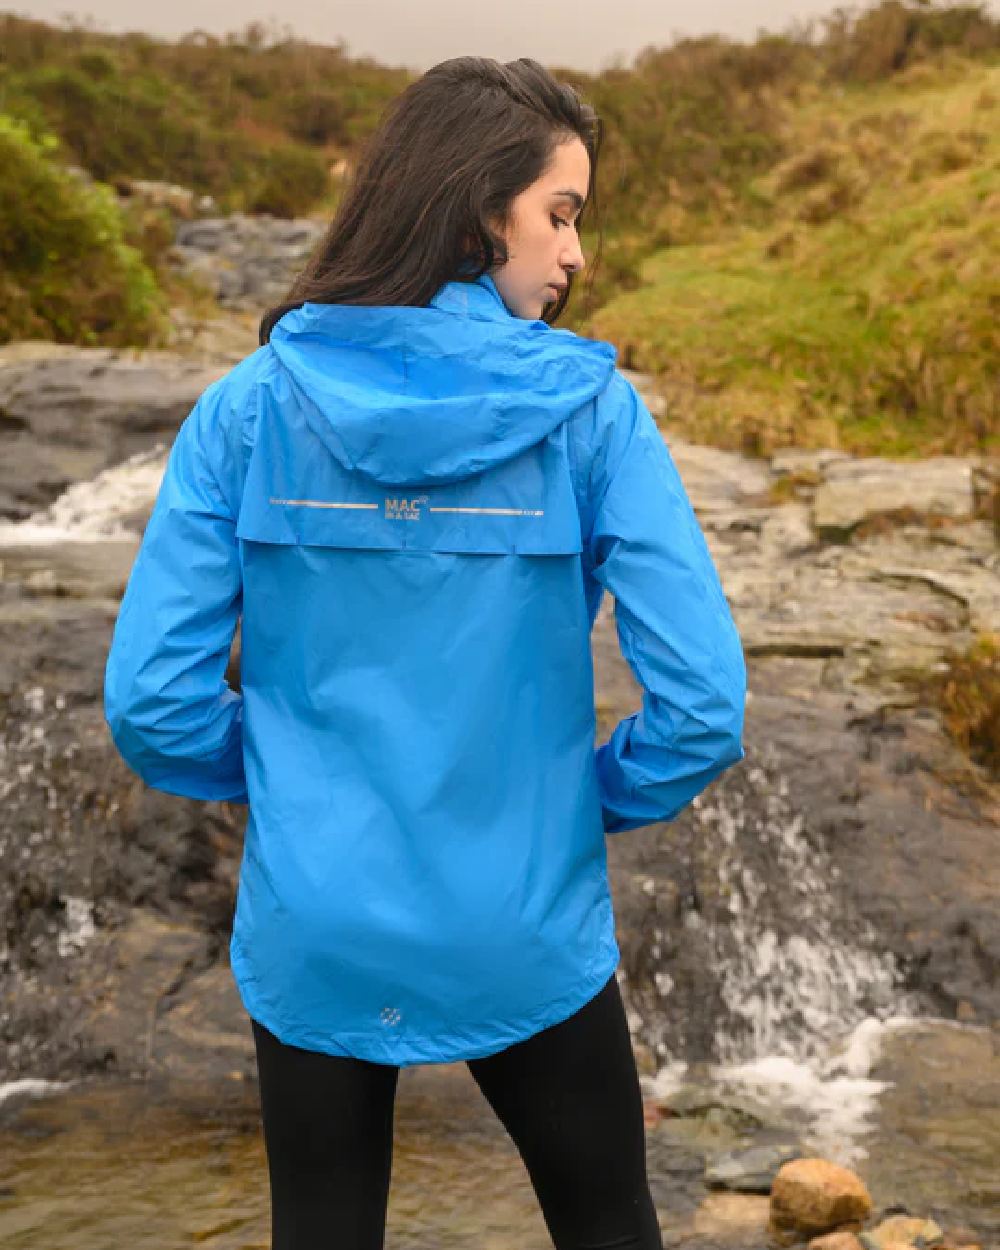 Ocean coloured Mac In A Sac Packable Origin Waterproof Jacket on blurry background 